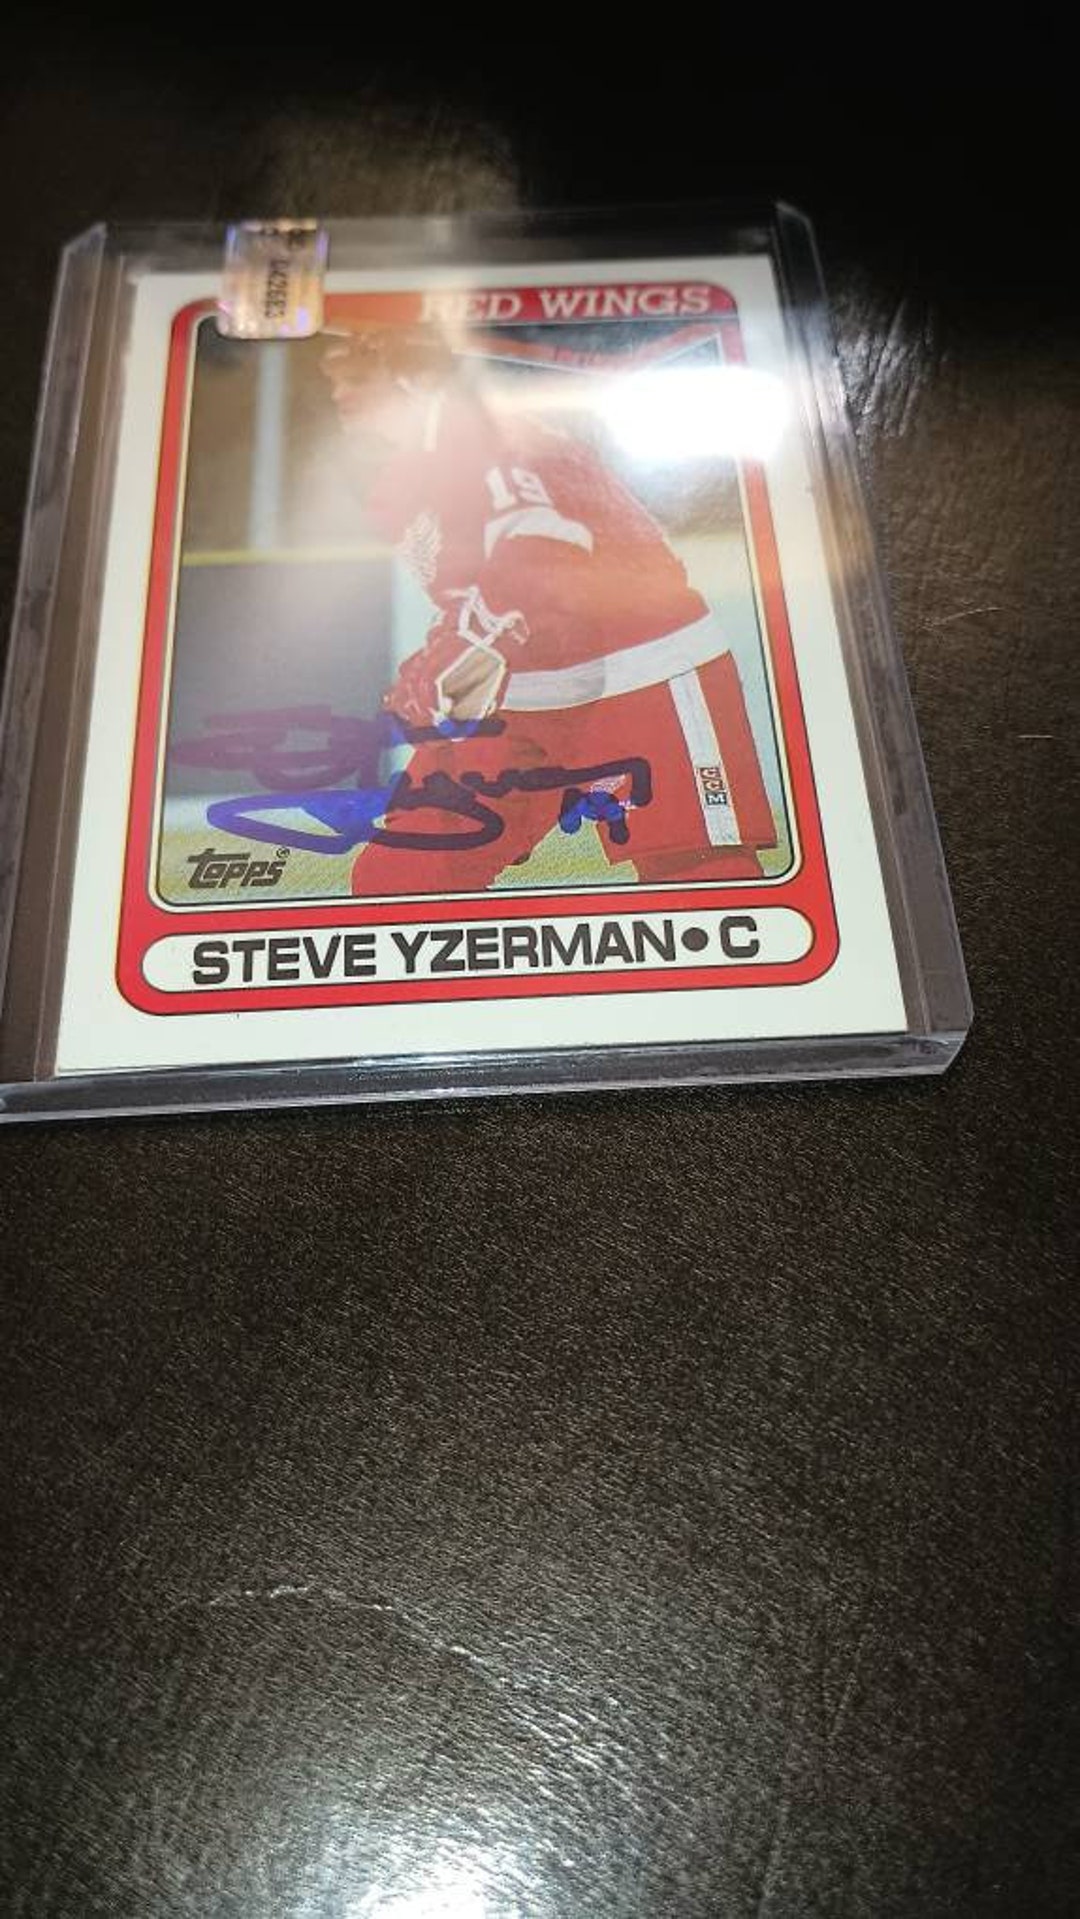 Steve Yzerman Autographed Jerseys, Signed Steve Yzerman Inscripted